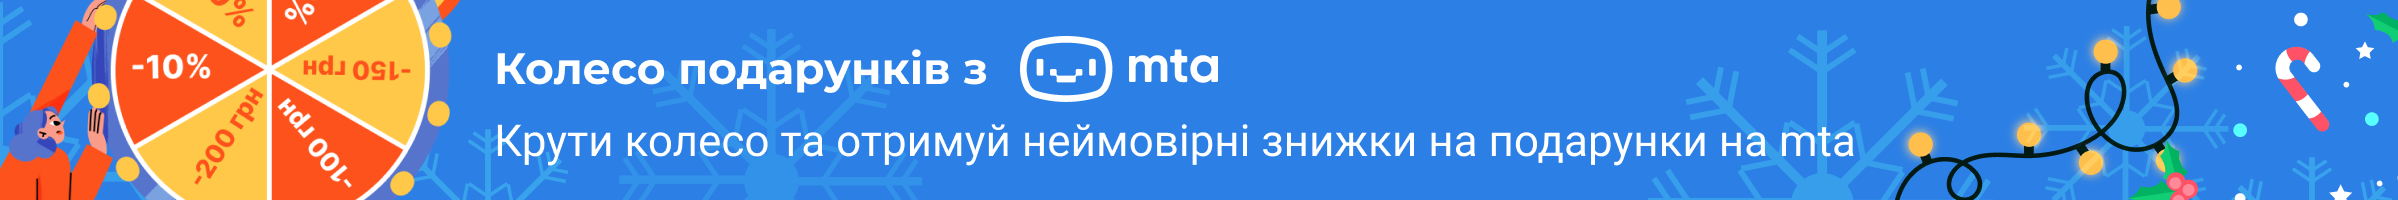 MTA.UA Header